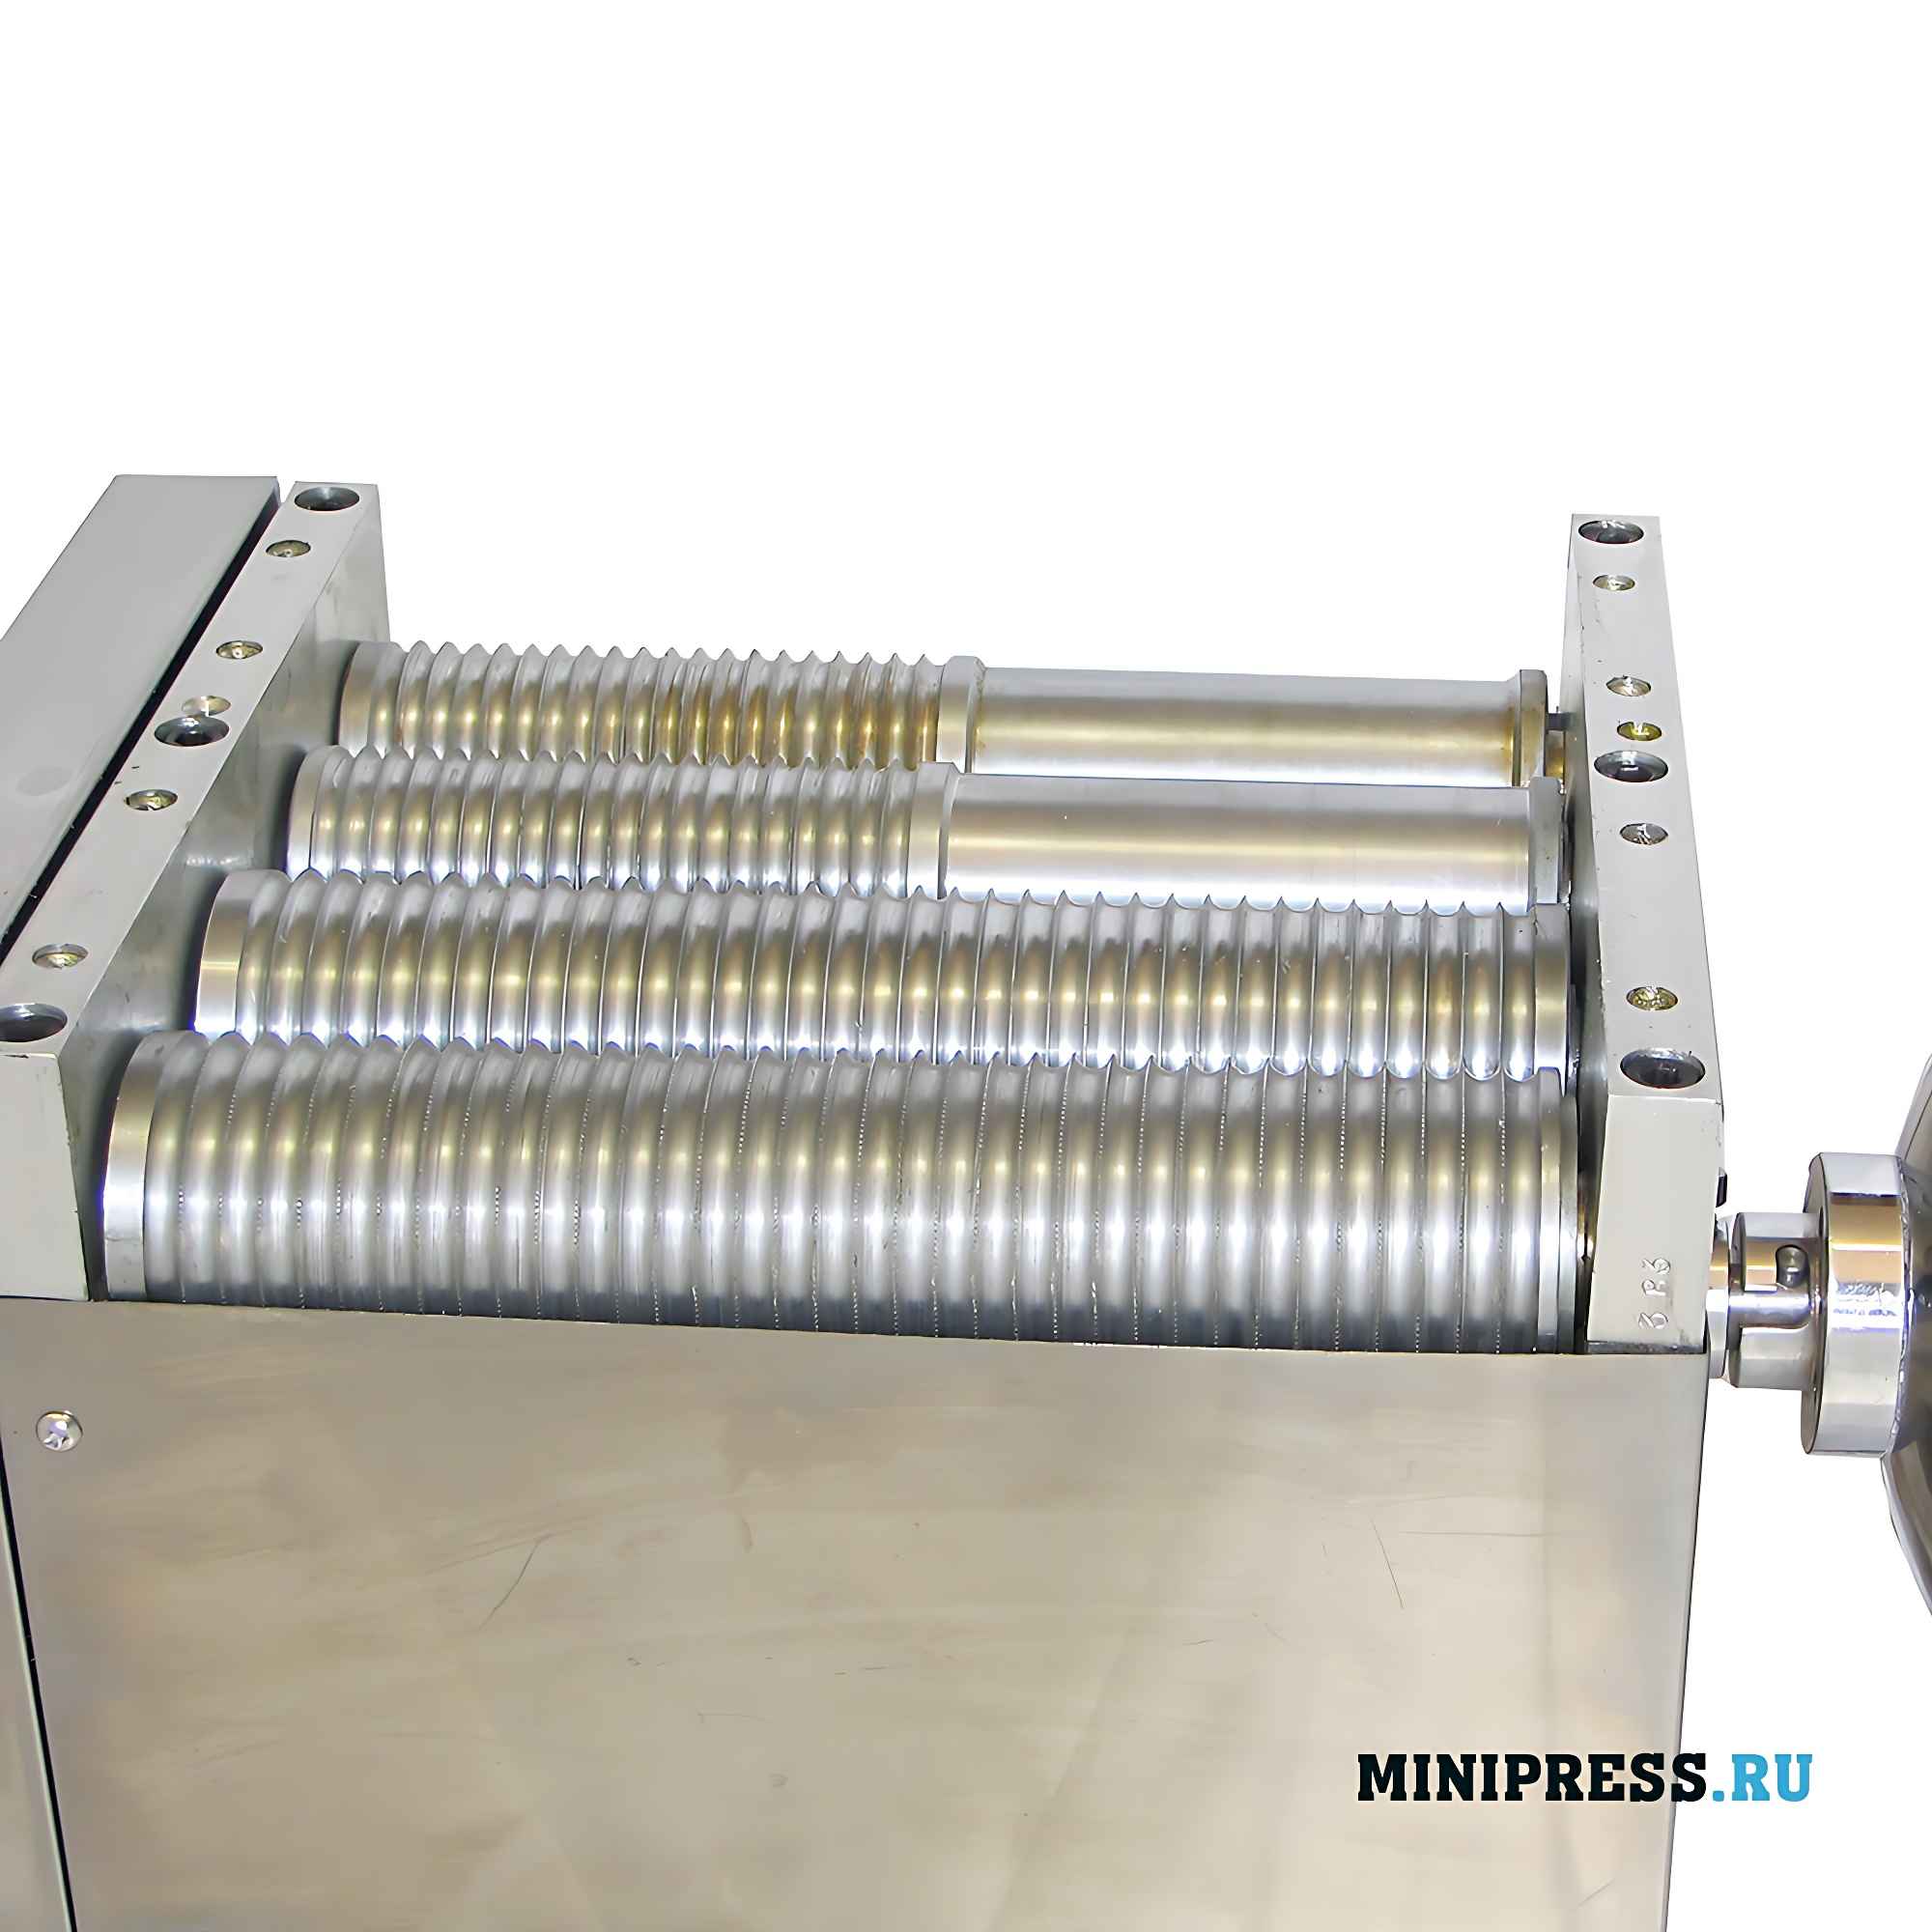 Оборудование для производство драже и бойлов диаметром до 12 мм